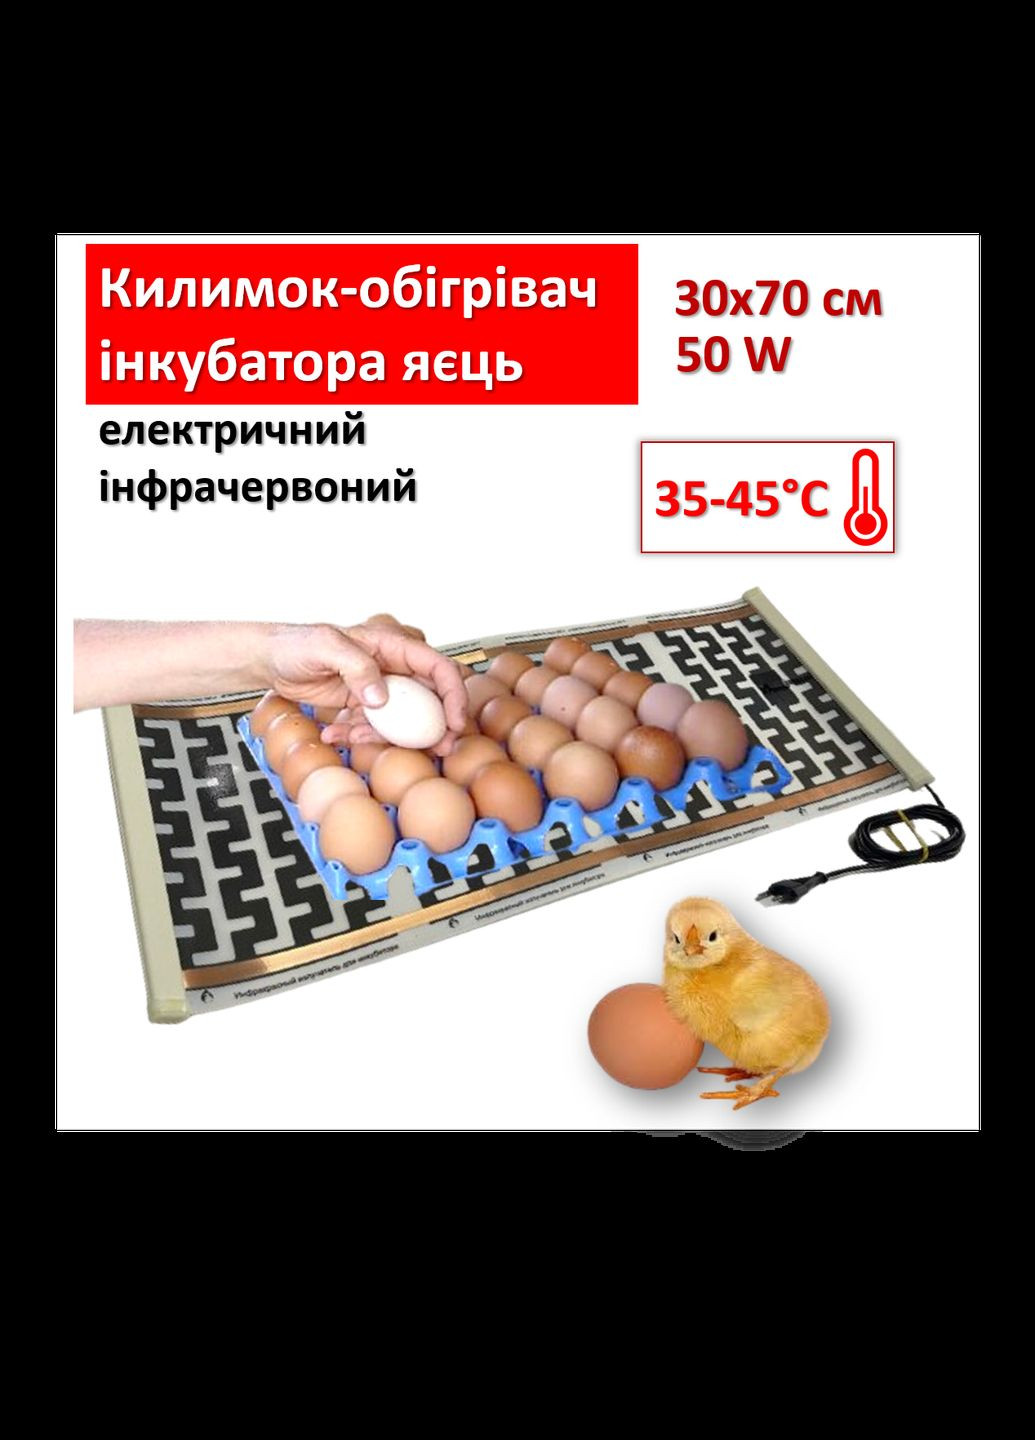 Коврикобогреватель инкубатора яиц электрический инфракрасный 30х70 см/ 50 Вт Monocrystal (280947117)